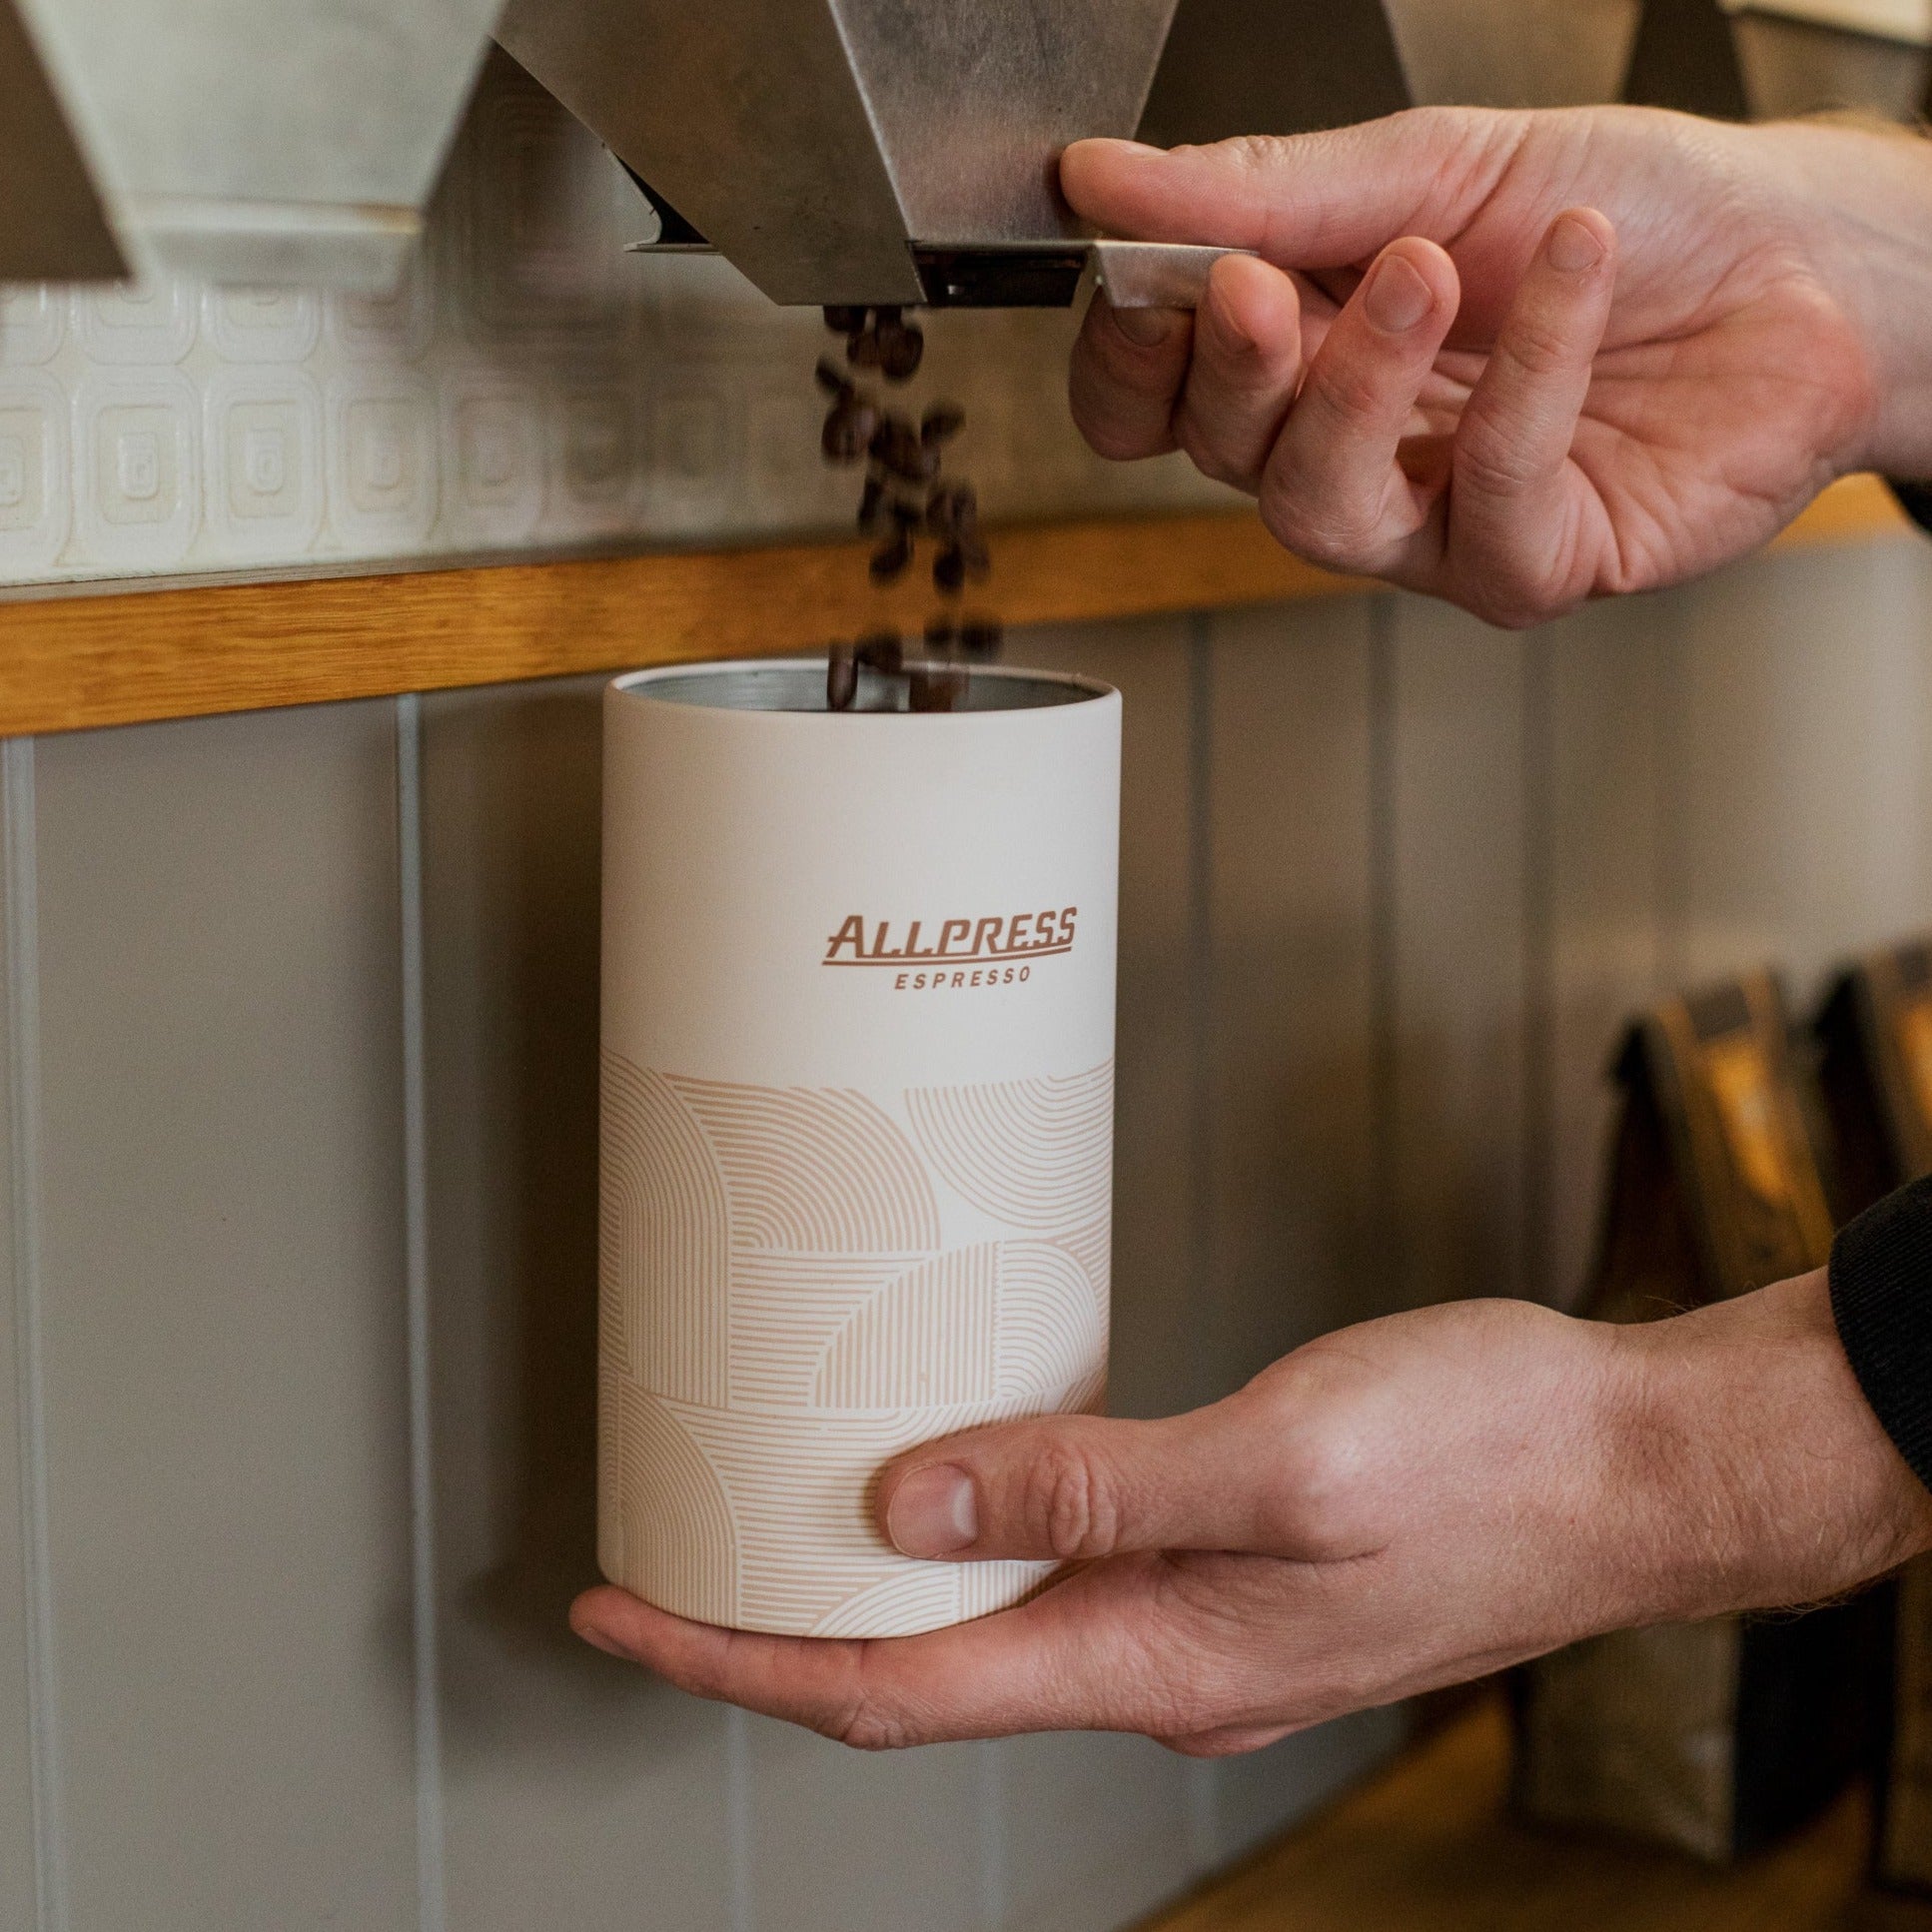 Allpress Airtight Coffee Canister | Buttermilk